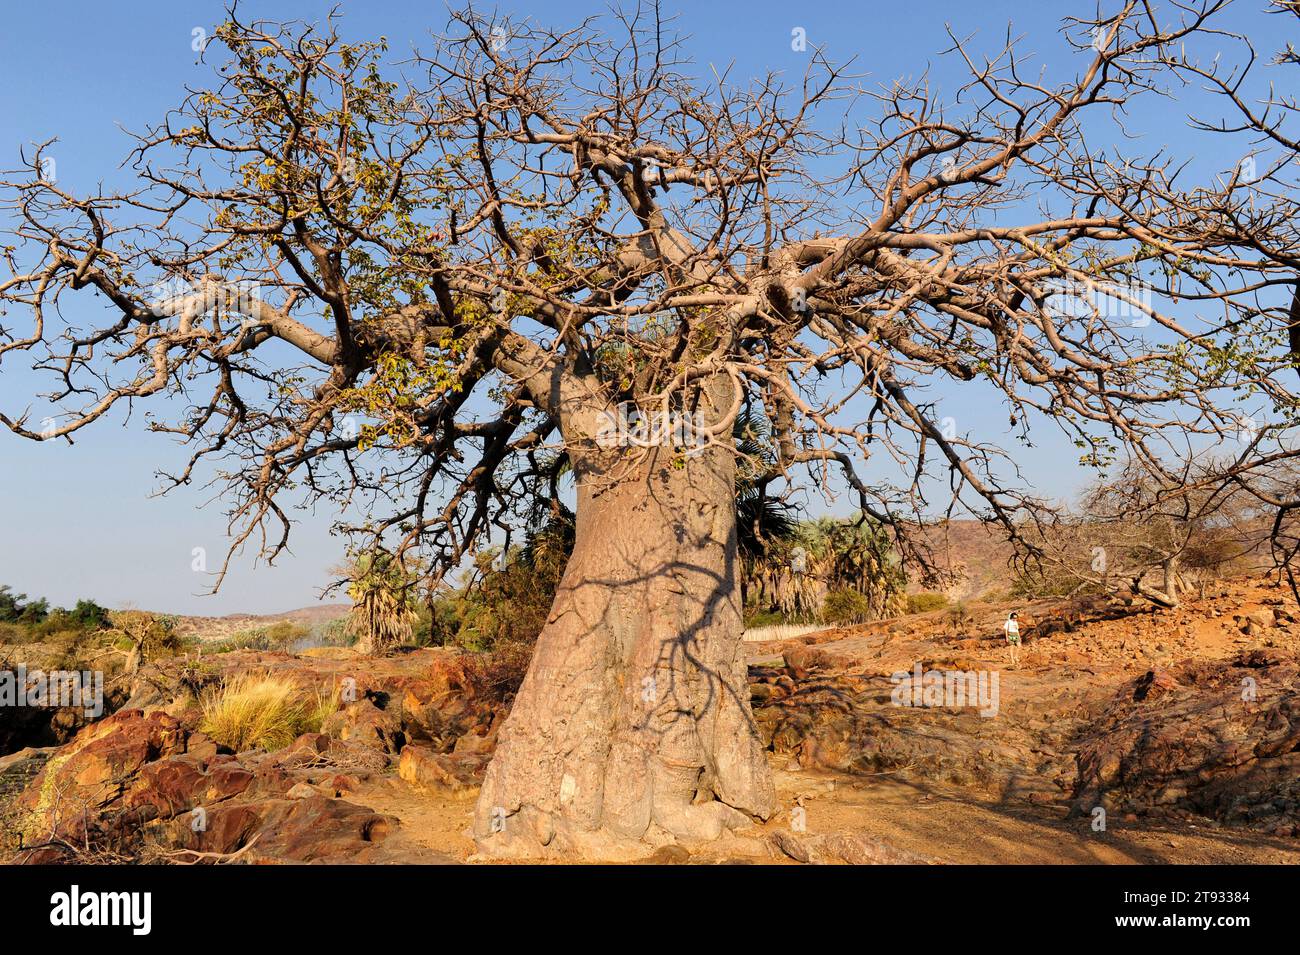 Baobab (Adansonia digitata). Cette photo a été prise au nord de la Namibie sur les rives de la rivière Kunene, sur les chutes d'Epupa. Banque D'Images